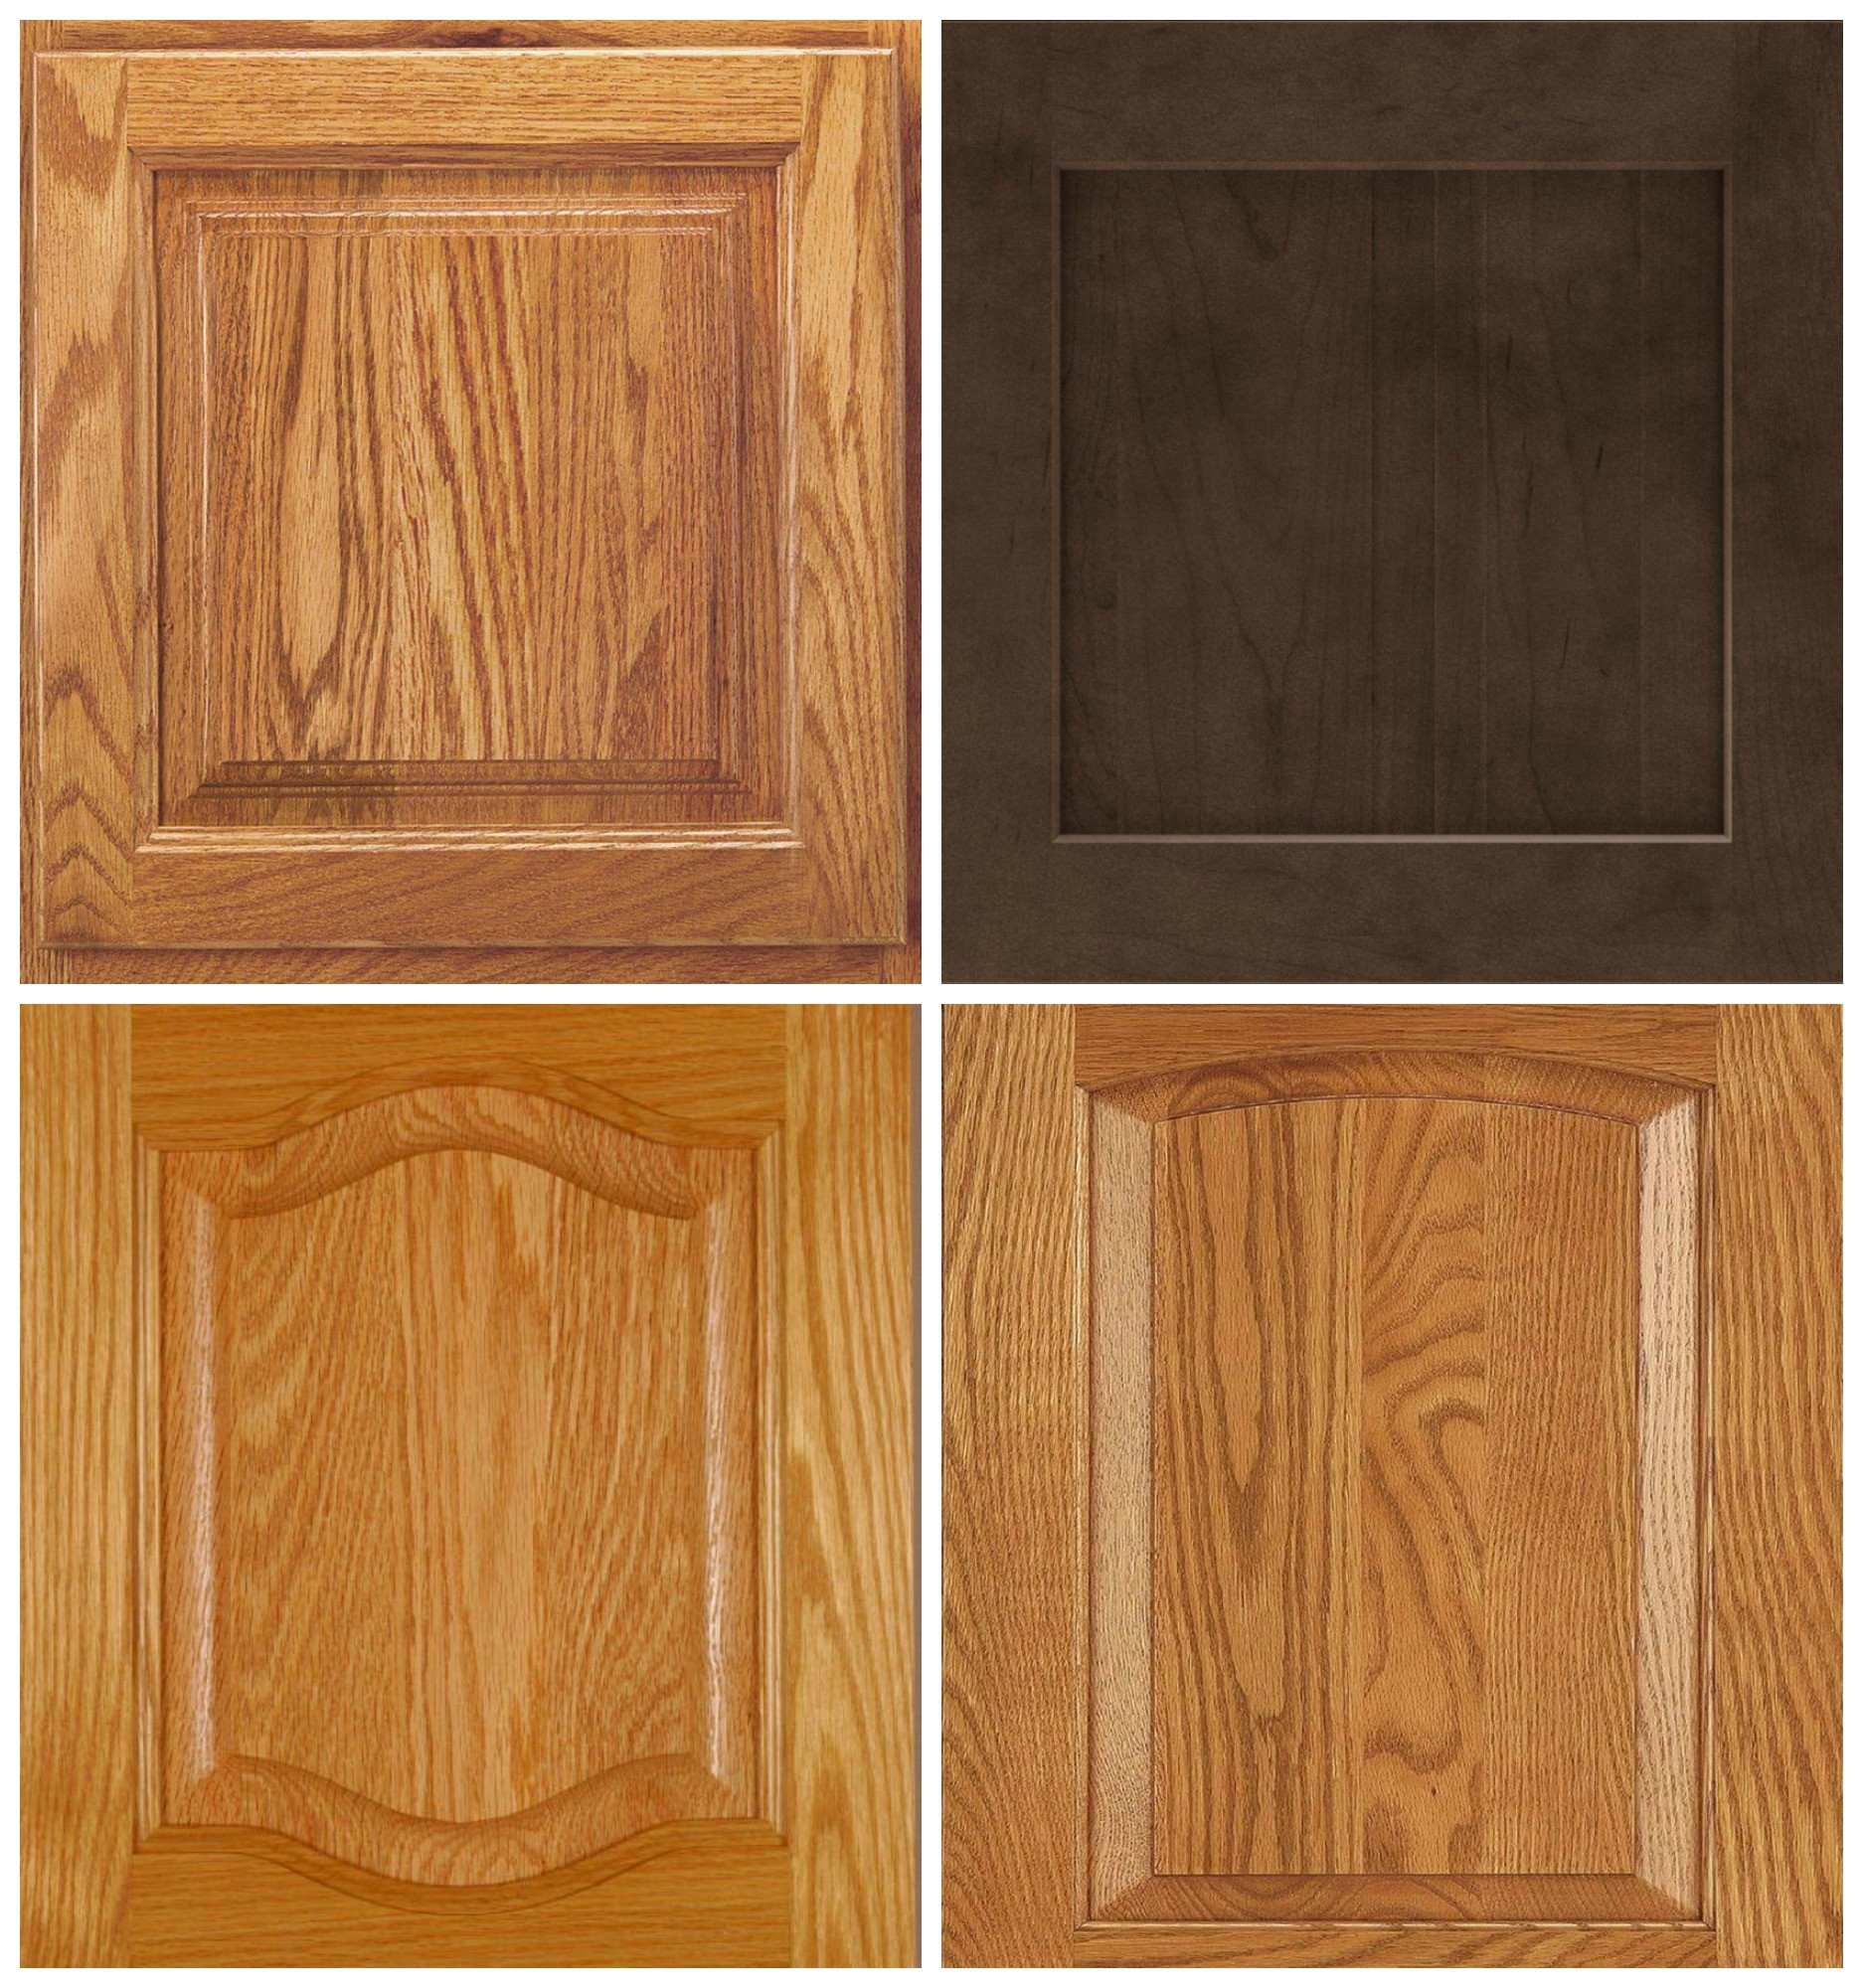 Oak Kitchen Cabinet Doors
 Cabinet door profiles ideas to update oak cabinets